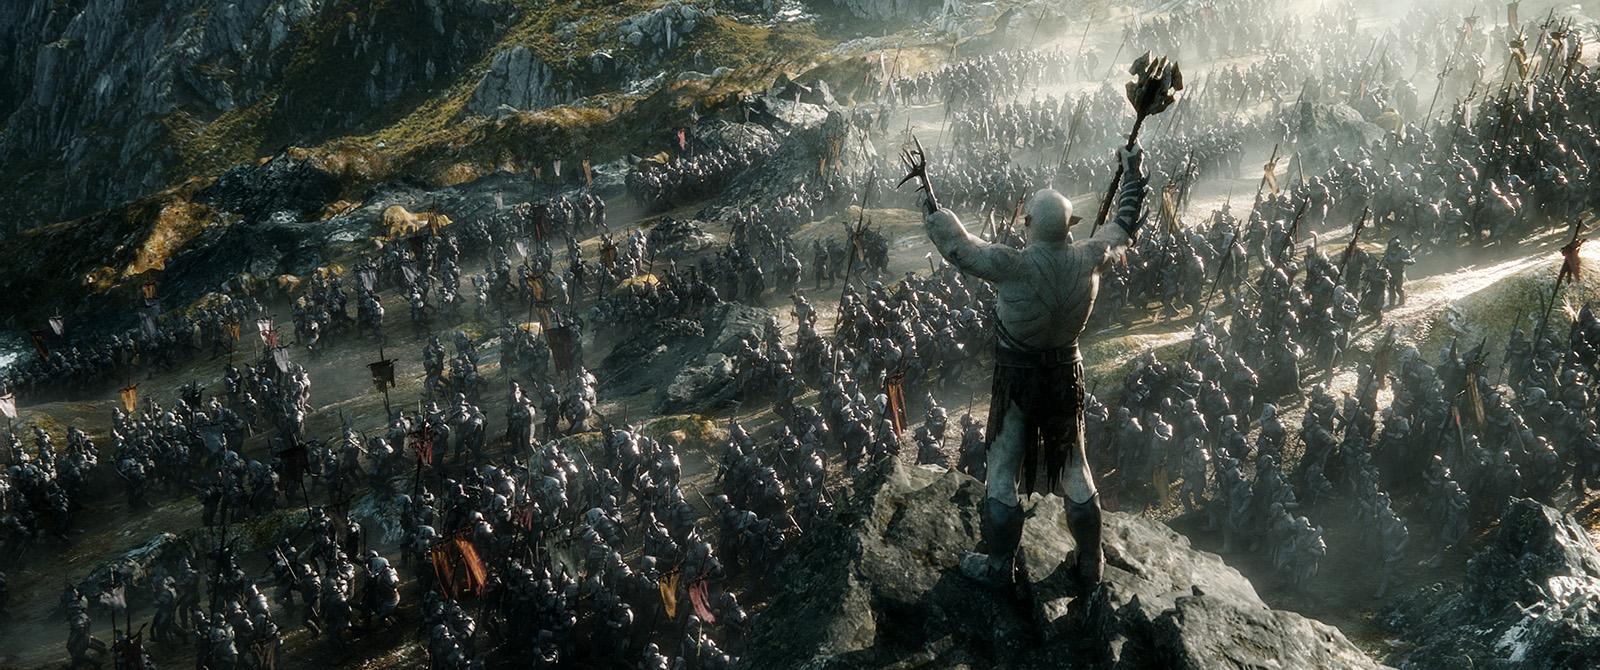 Le Hobbit : la Bataille des Cinq Armées, critique